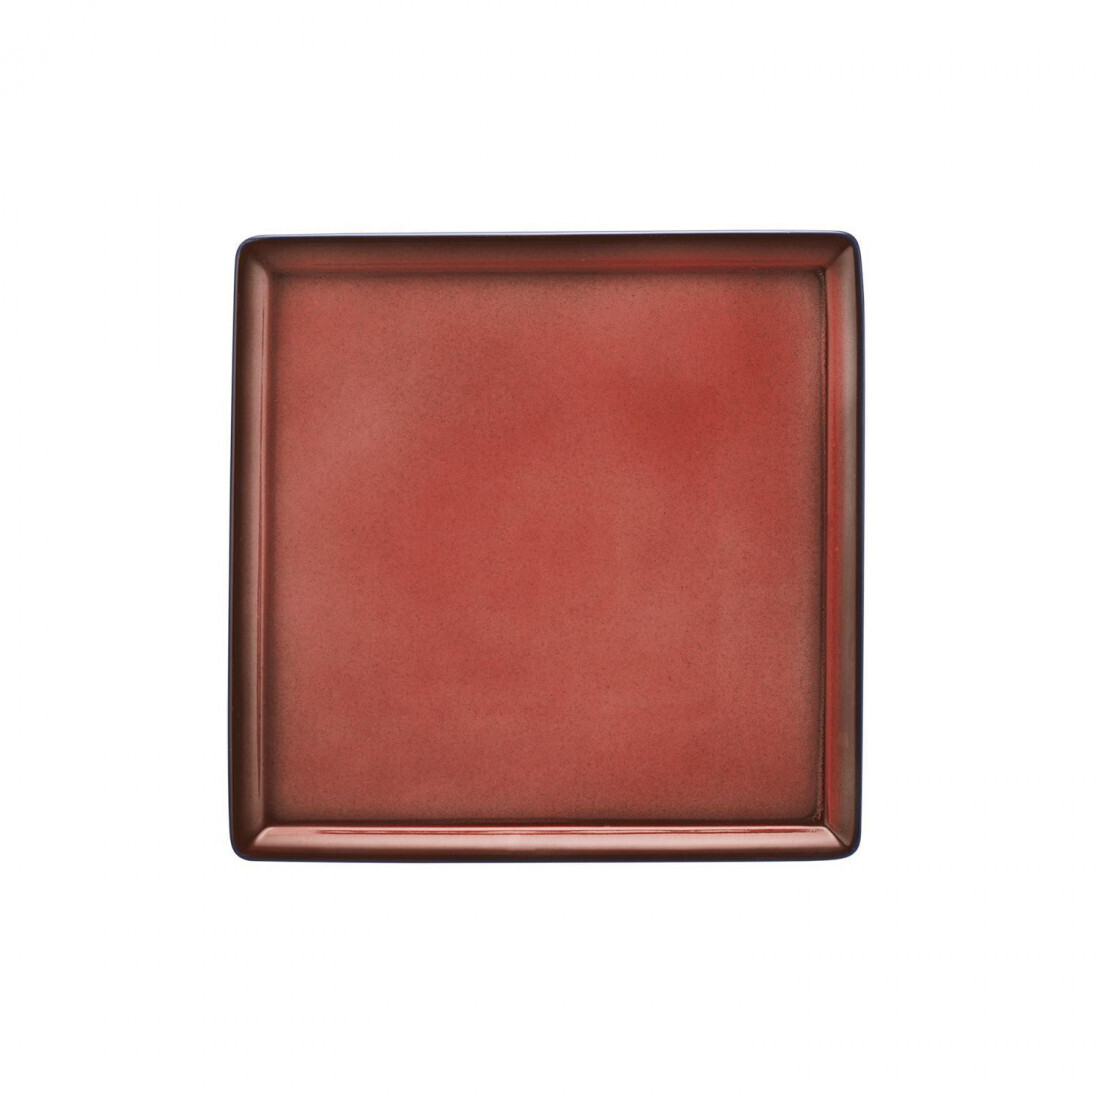 Seltmann - Buffet Gourmet - Piatto 5170 23x23 cm Rosso